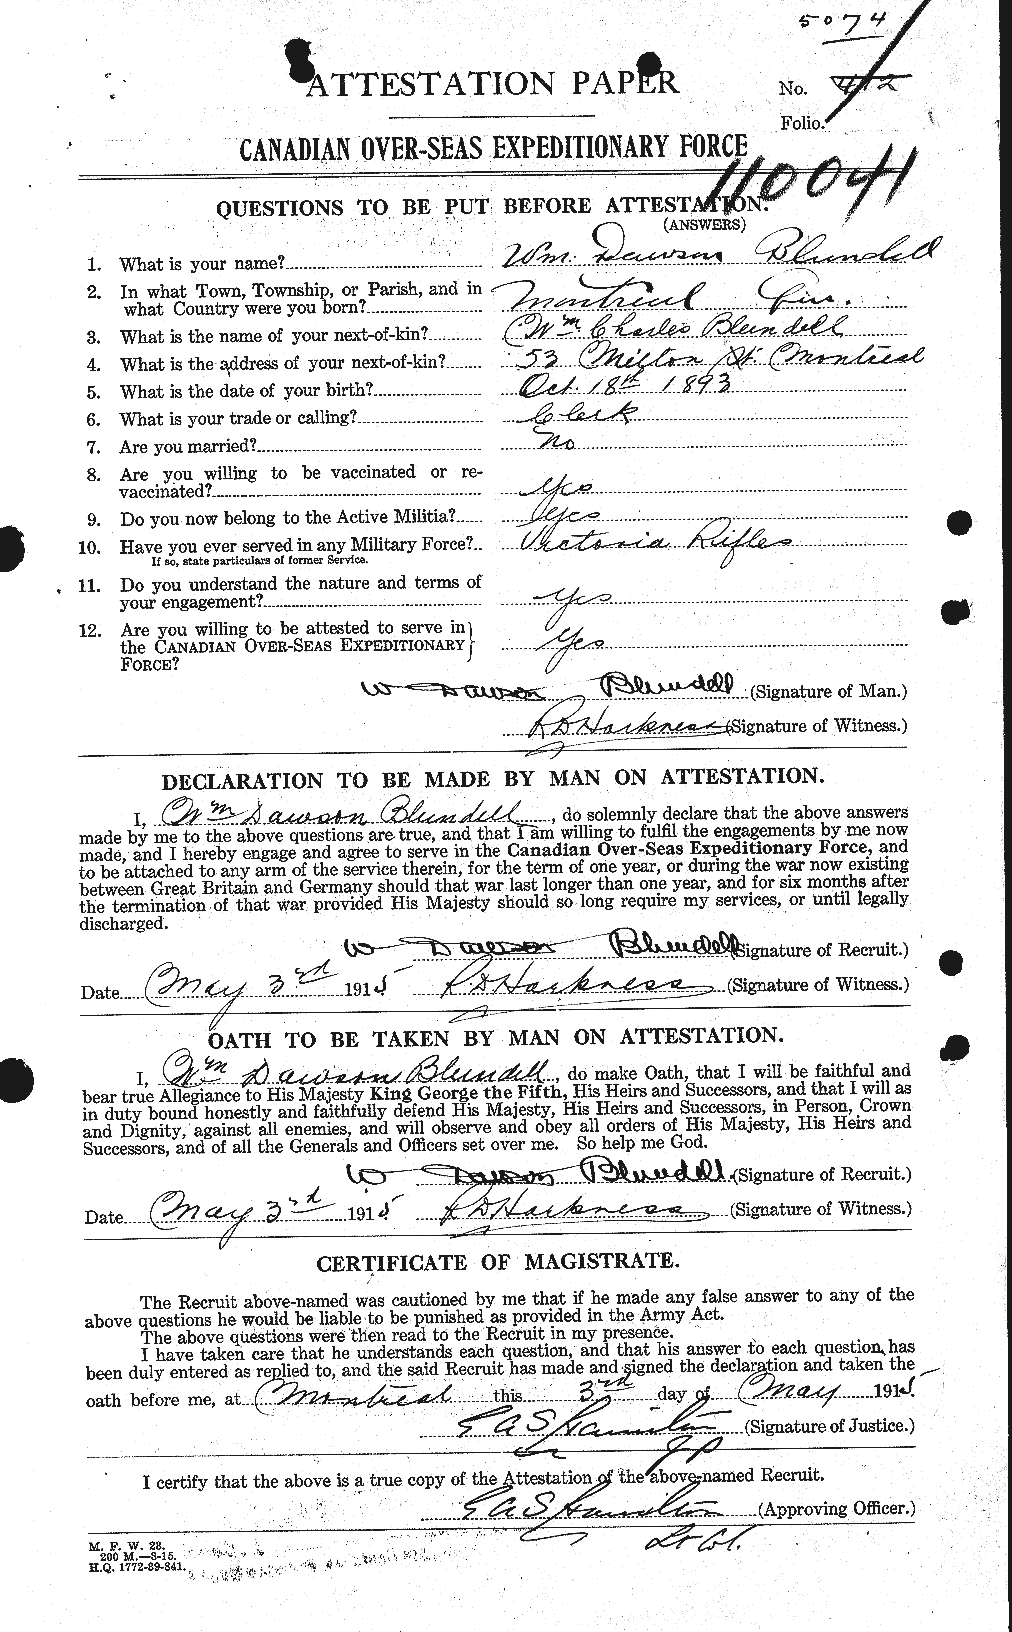 Dossiers du Personnel de la Première Guerre mondiale - CEC 247210a